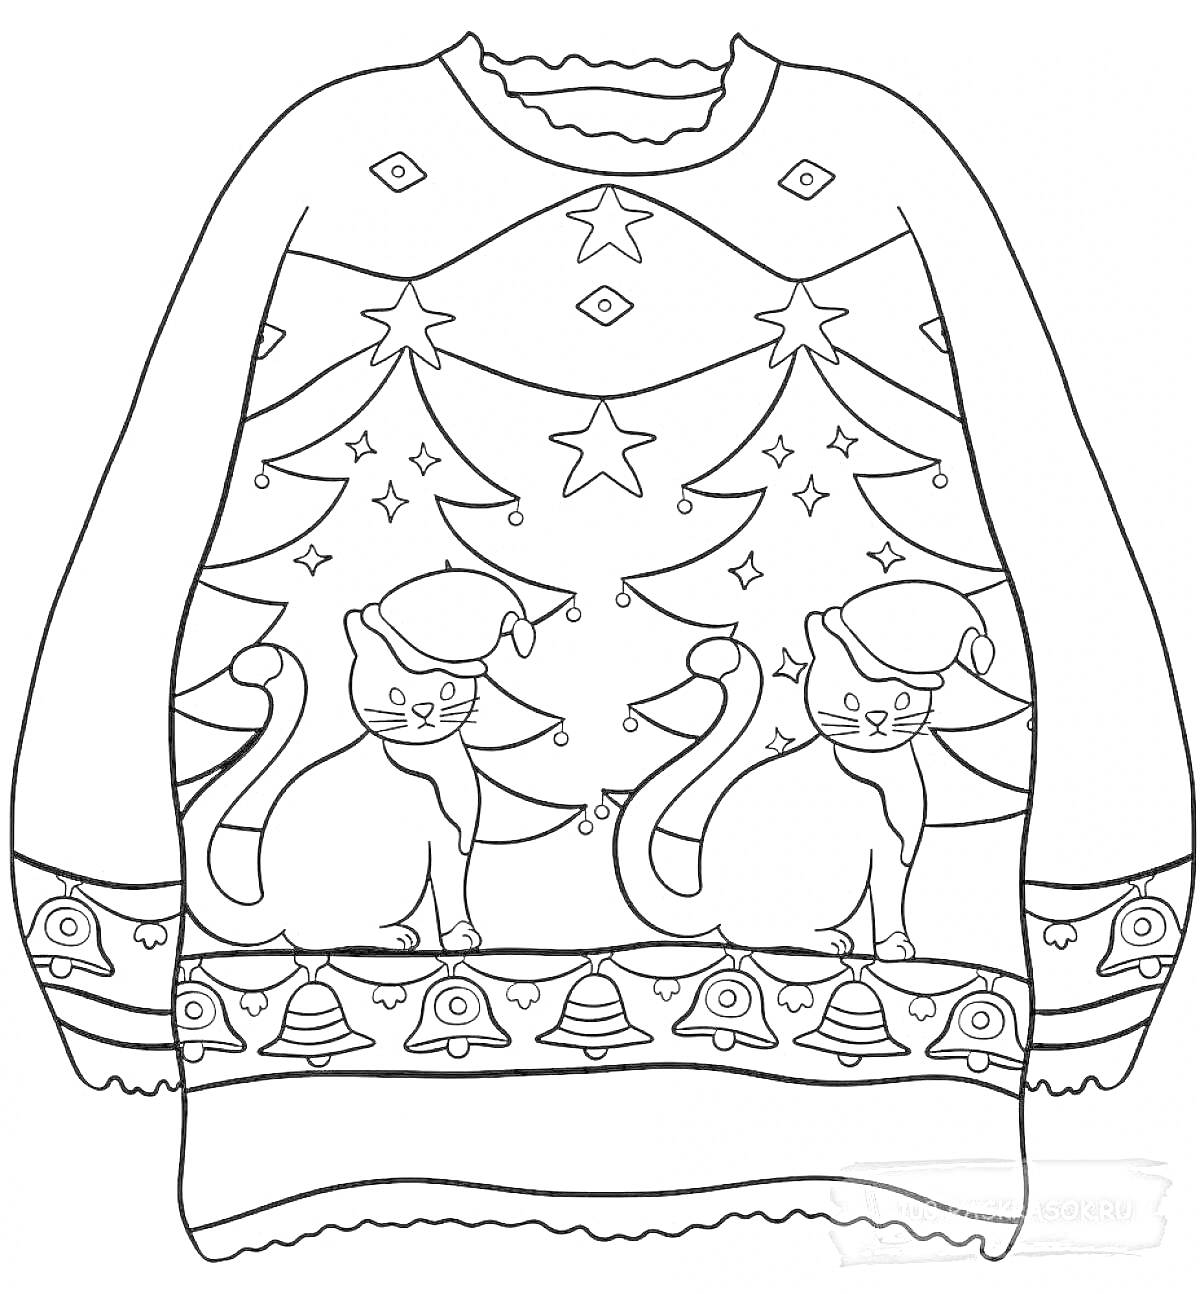 Раскраска Рождественская кофта с котами, ёлками, звёздами и колокольчиками